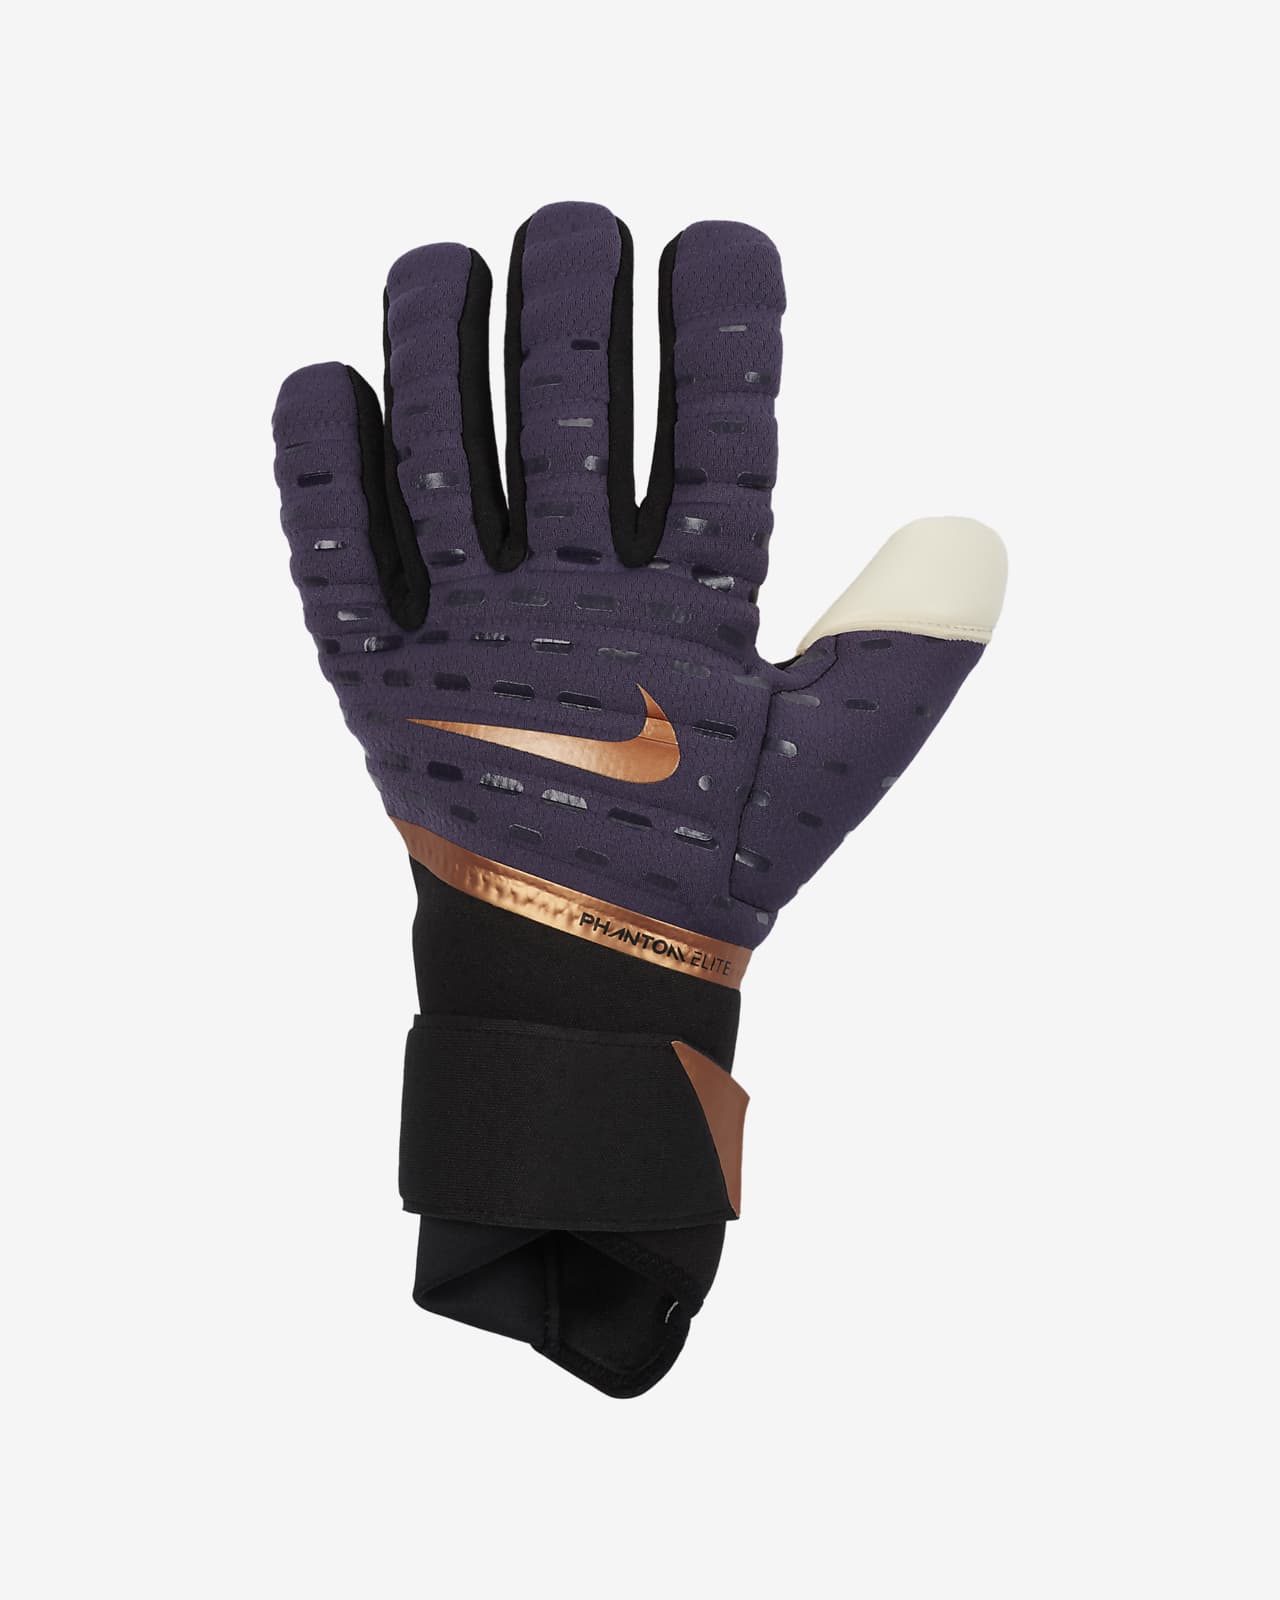 Nike Phantom Elite Goalkeeper Football Gloves